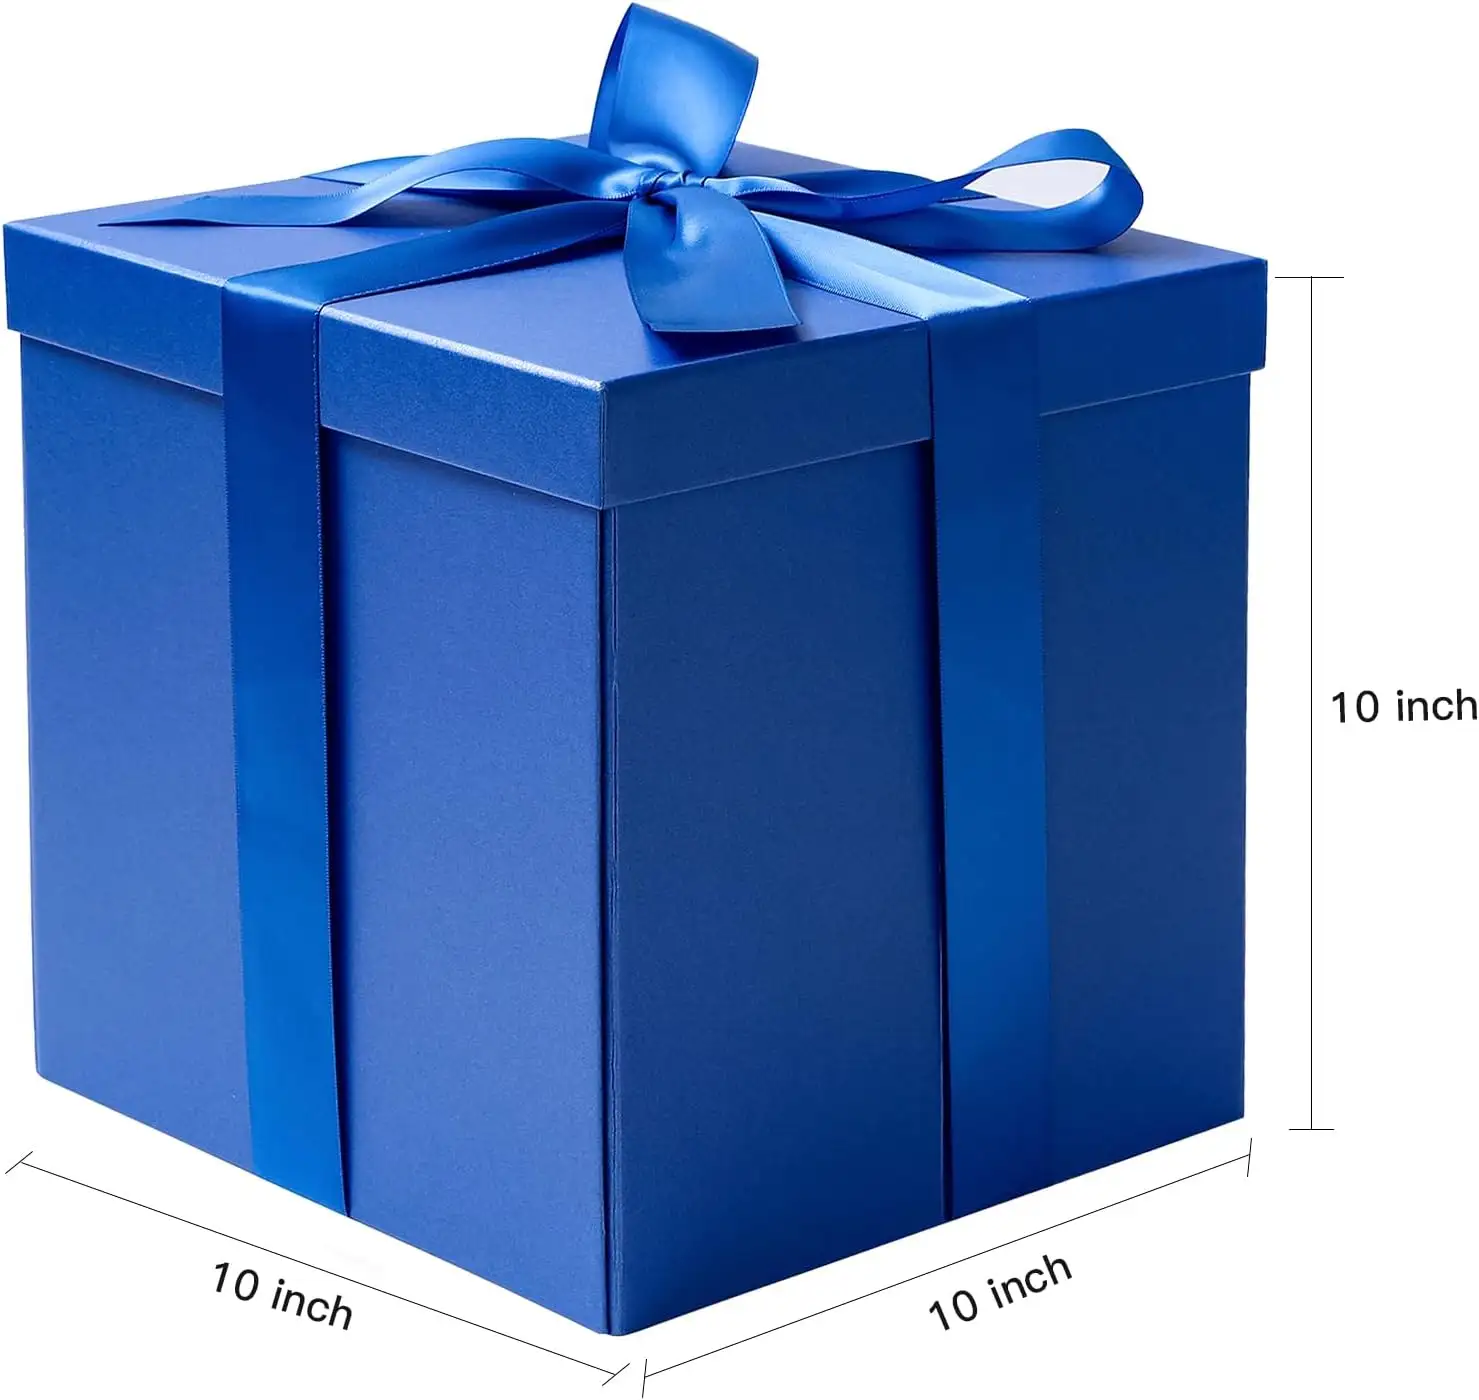 Mittlere Geburtstags geschenk box mit Deckel, Band und Seidenpapier, zusammen klappbare Geschenk box-1 Stück, 10x10x10 Zoll, Königsblau